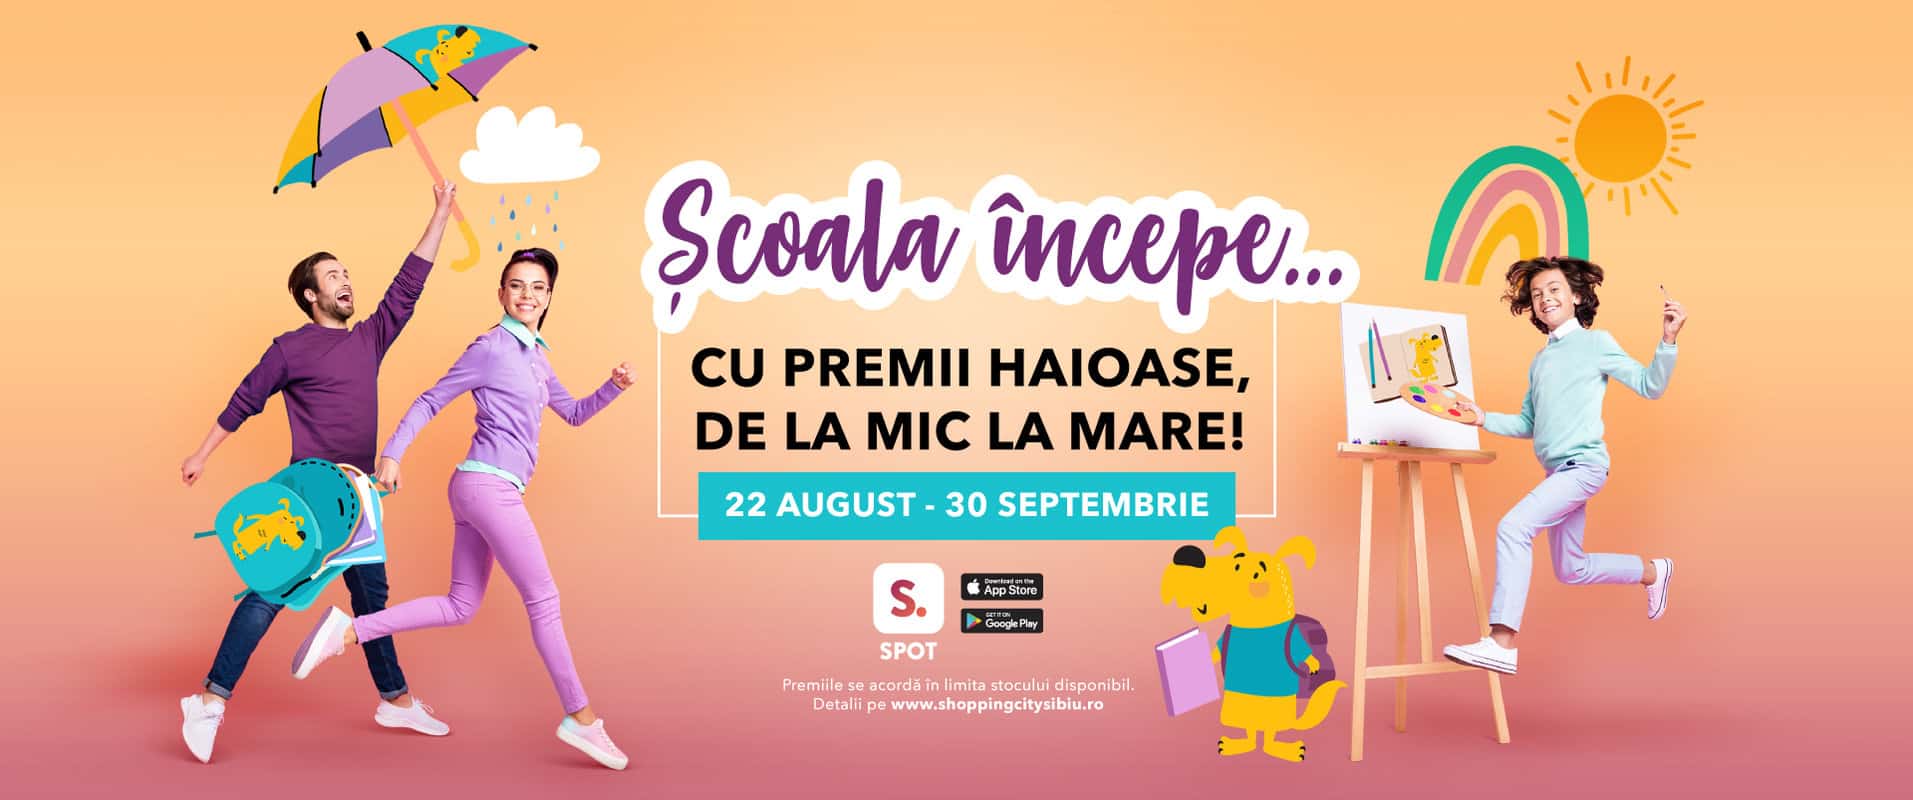 patrocle, mascota shopping city sibiu, este aliatul copiilor pentru un nou an școlar cu premii garantate și multe surprize